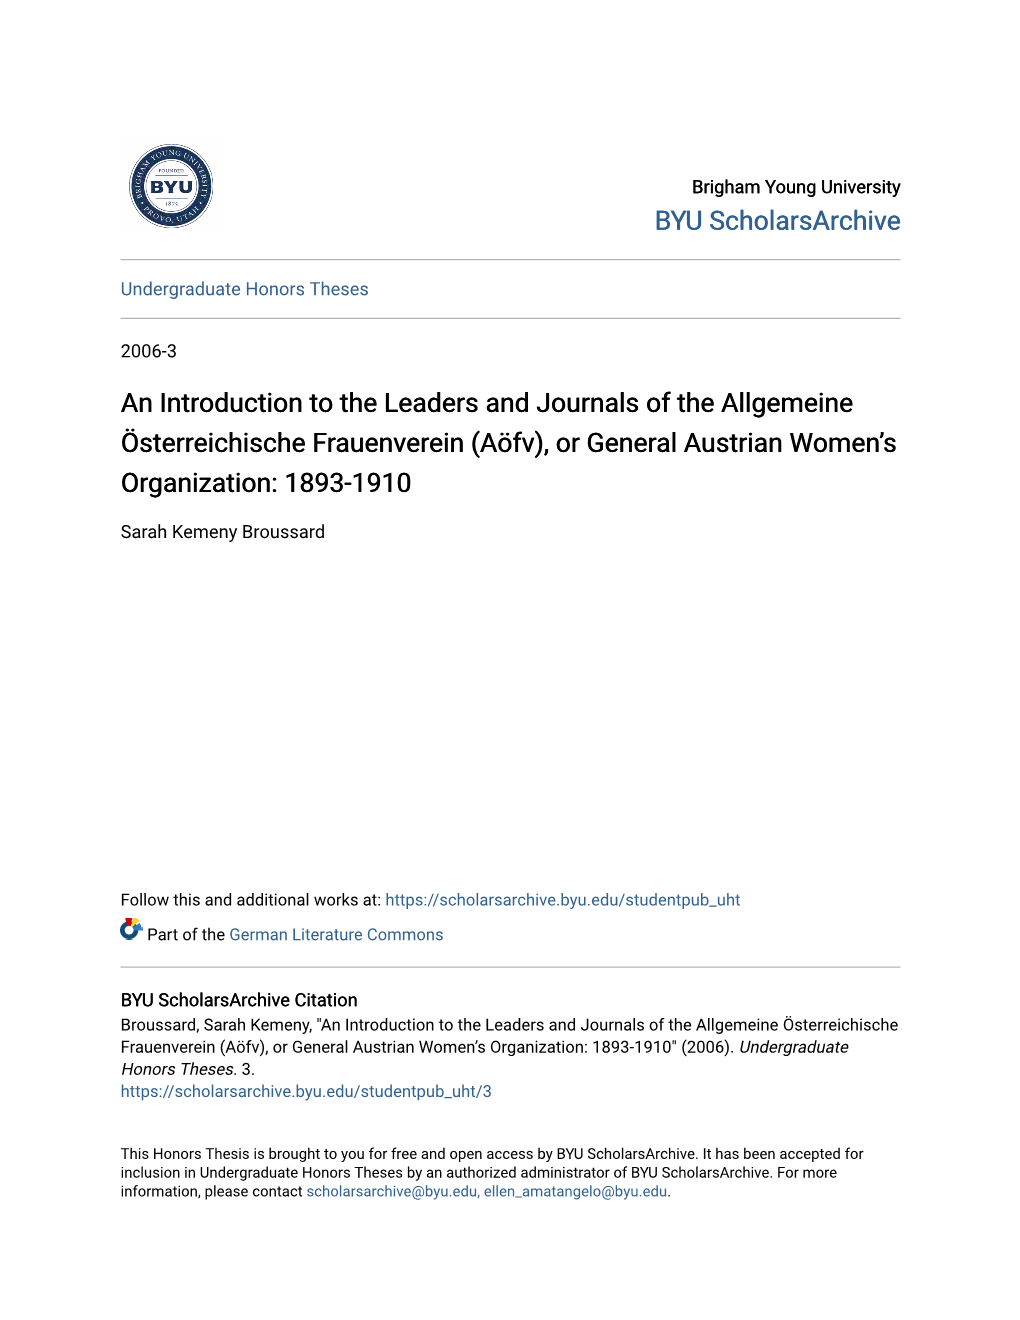 An Introduction to the Leaders and Journals of the Allgemeine Österreichische Frauenverein (Aöfv), Or General Austrian Women’S Organization: 1893-1910